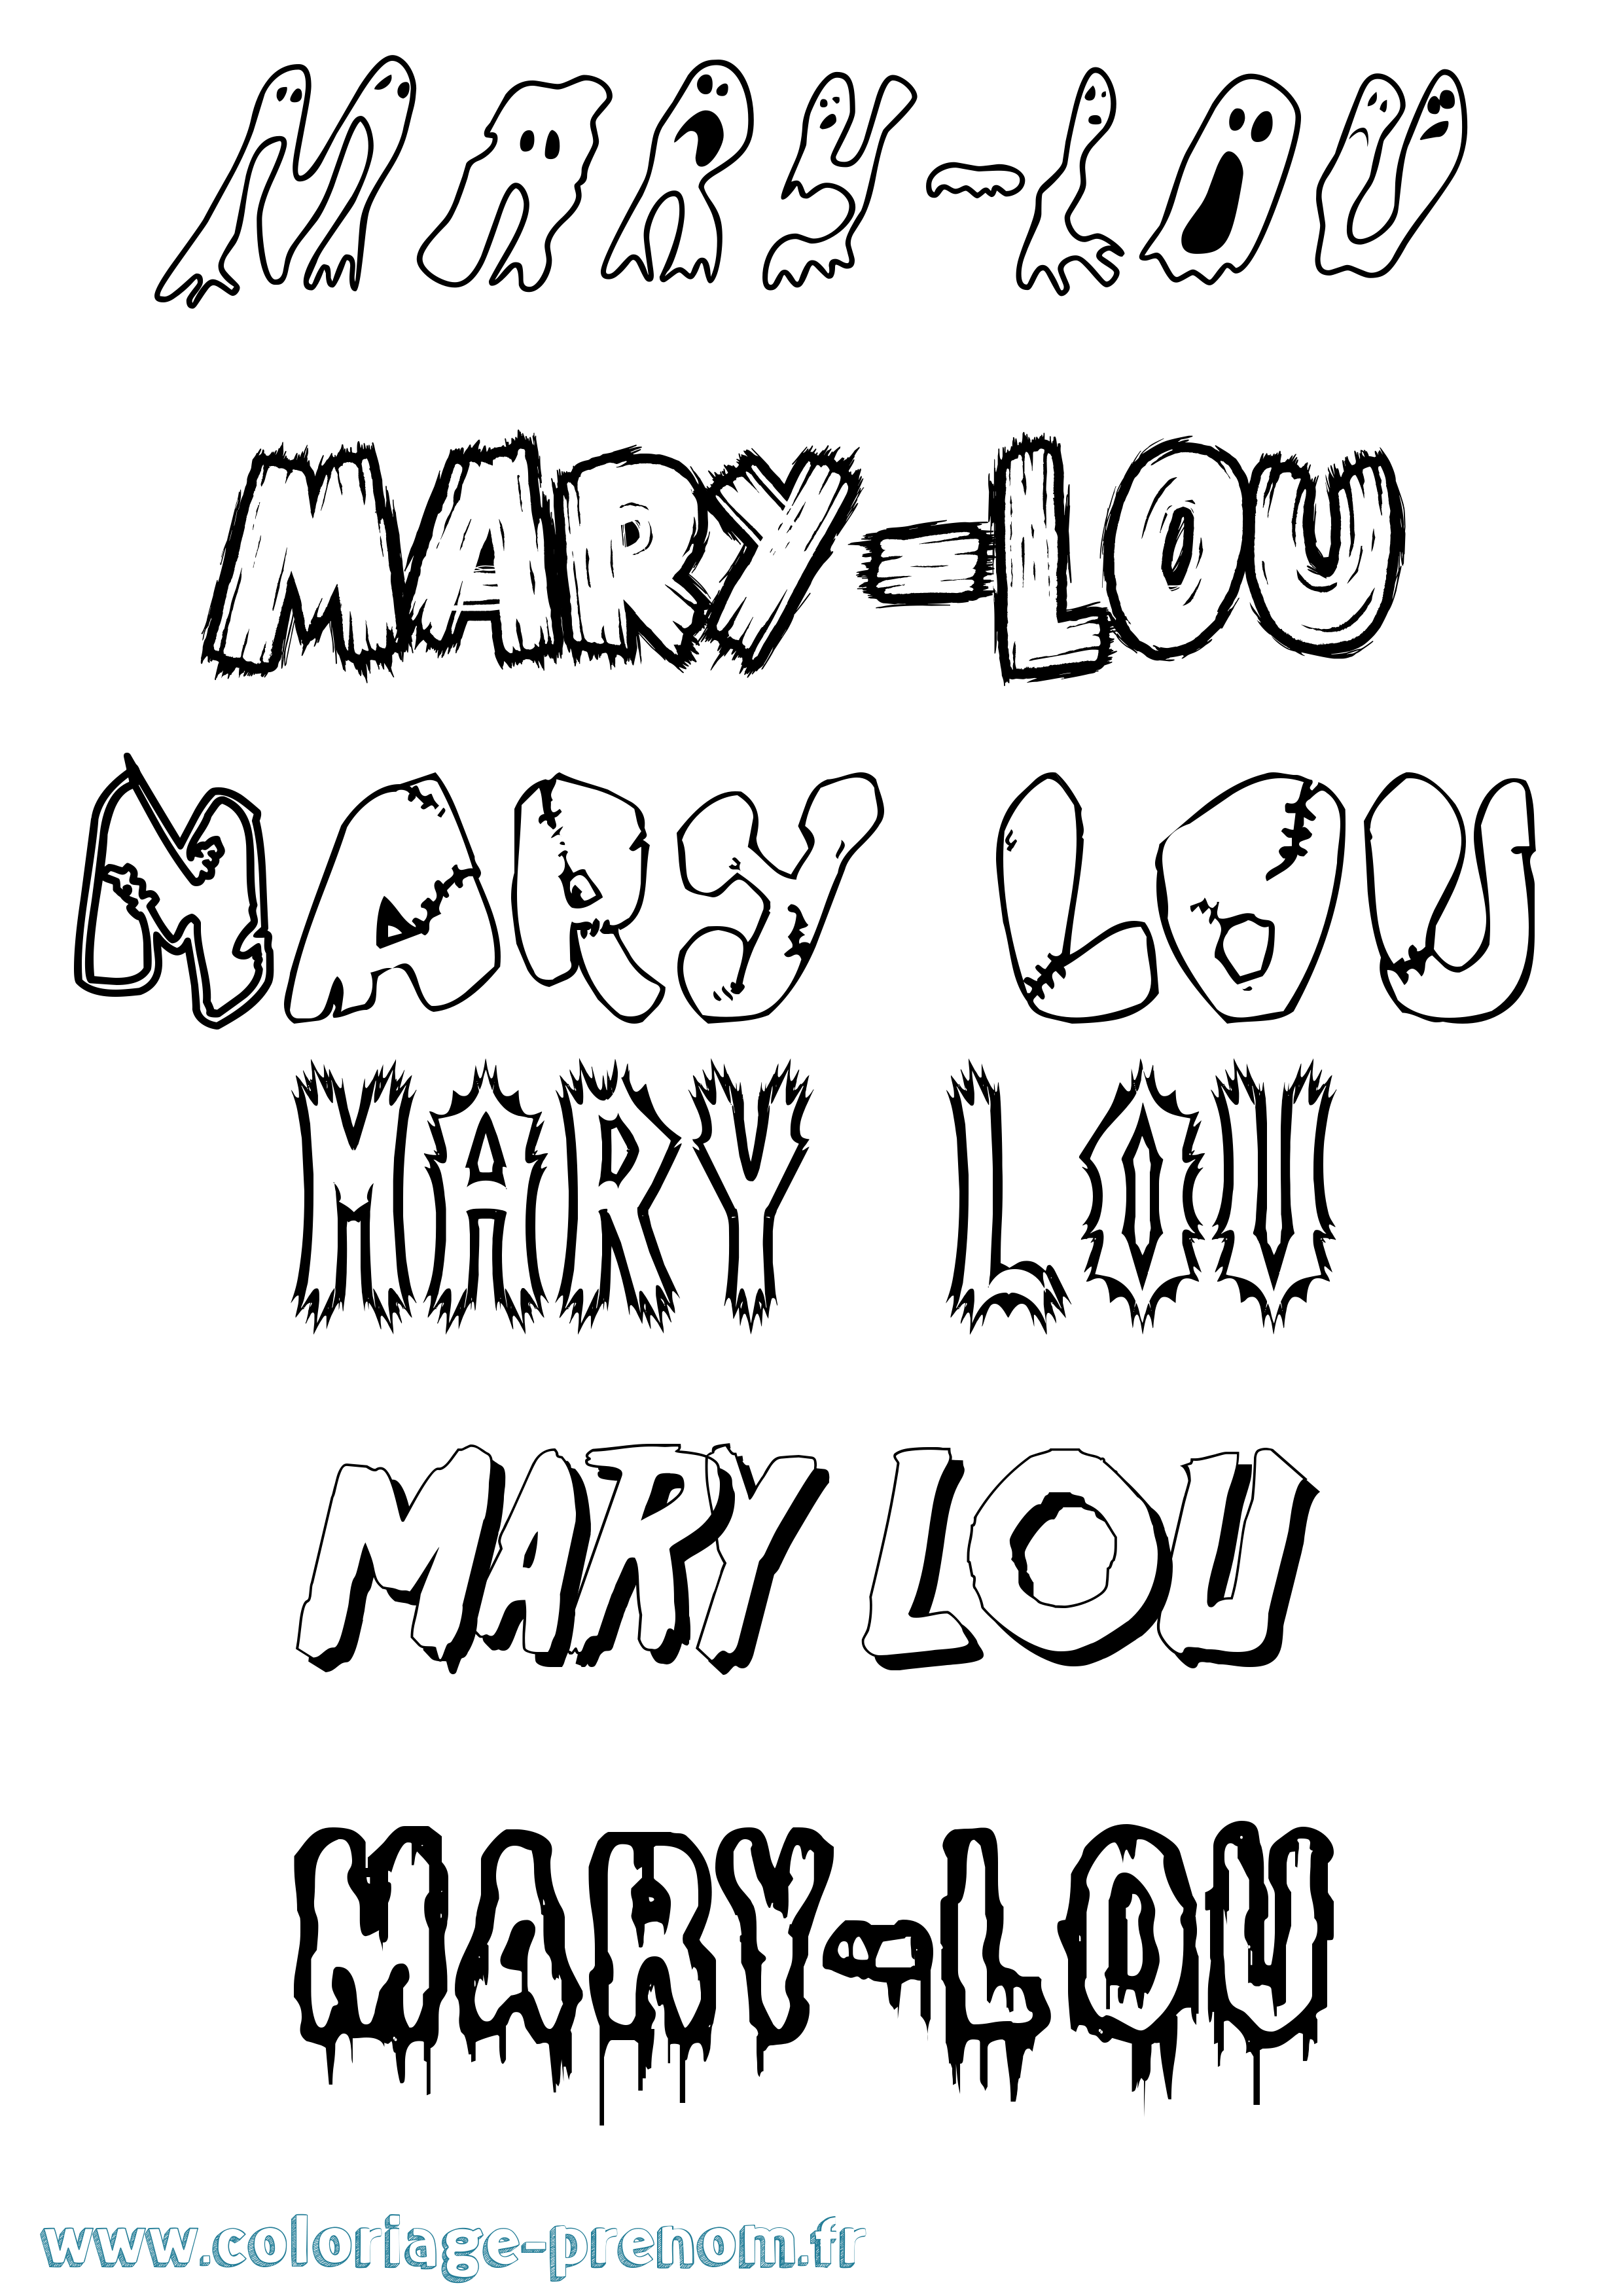 Coloriage prénom Mary-Lou Frisson